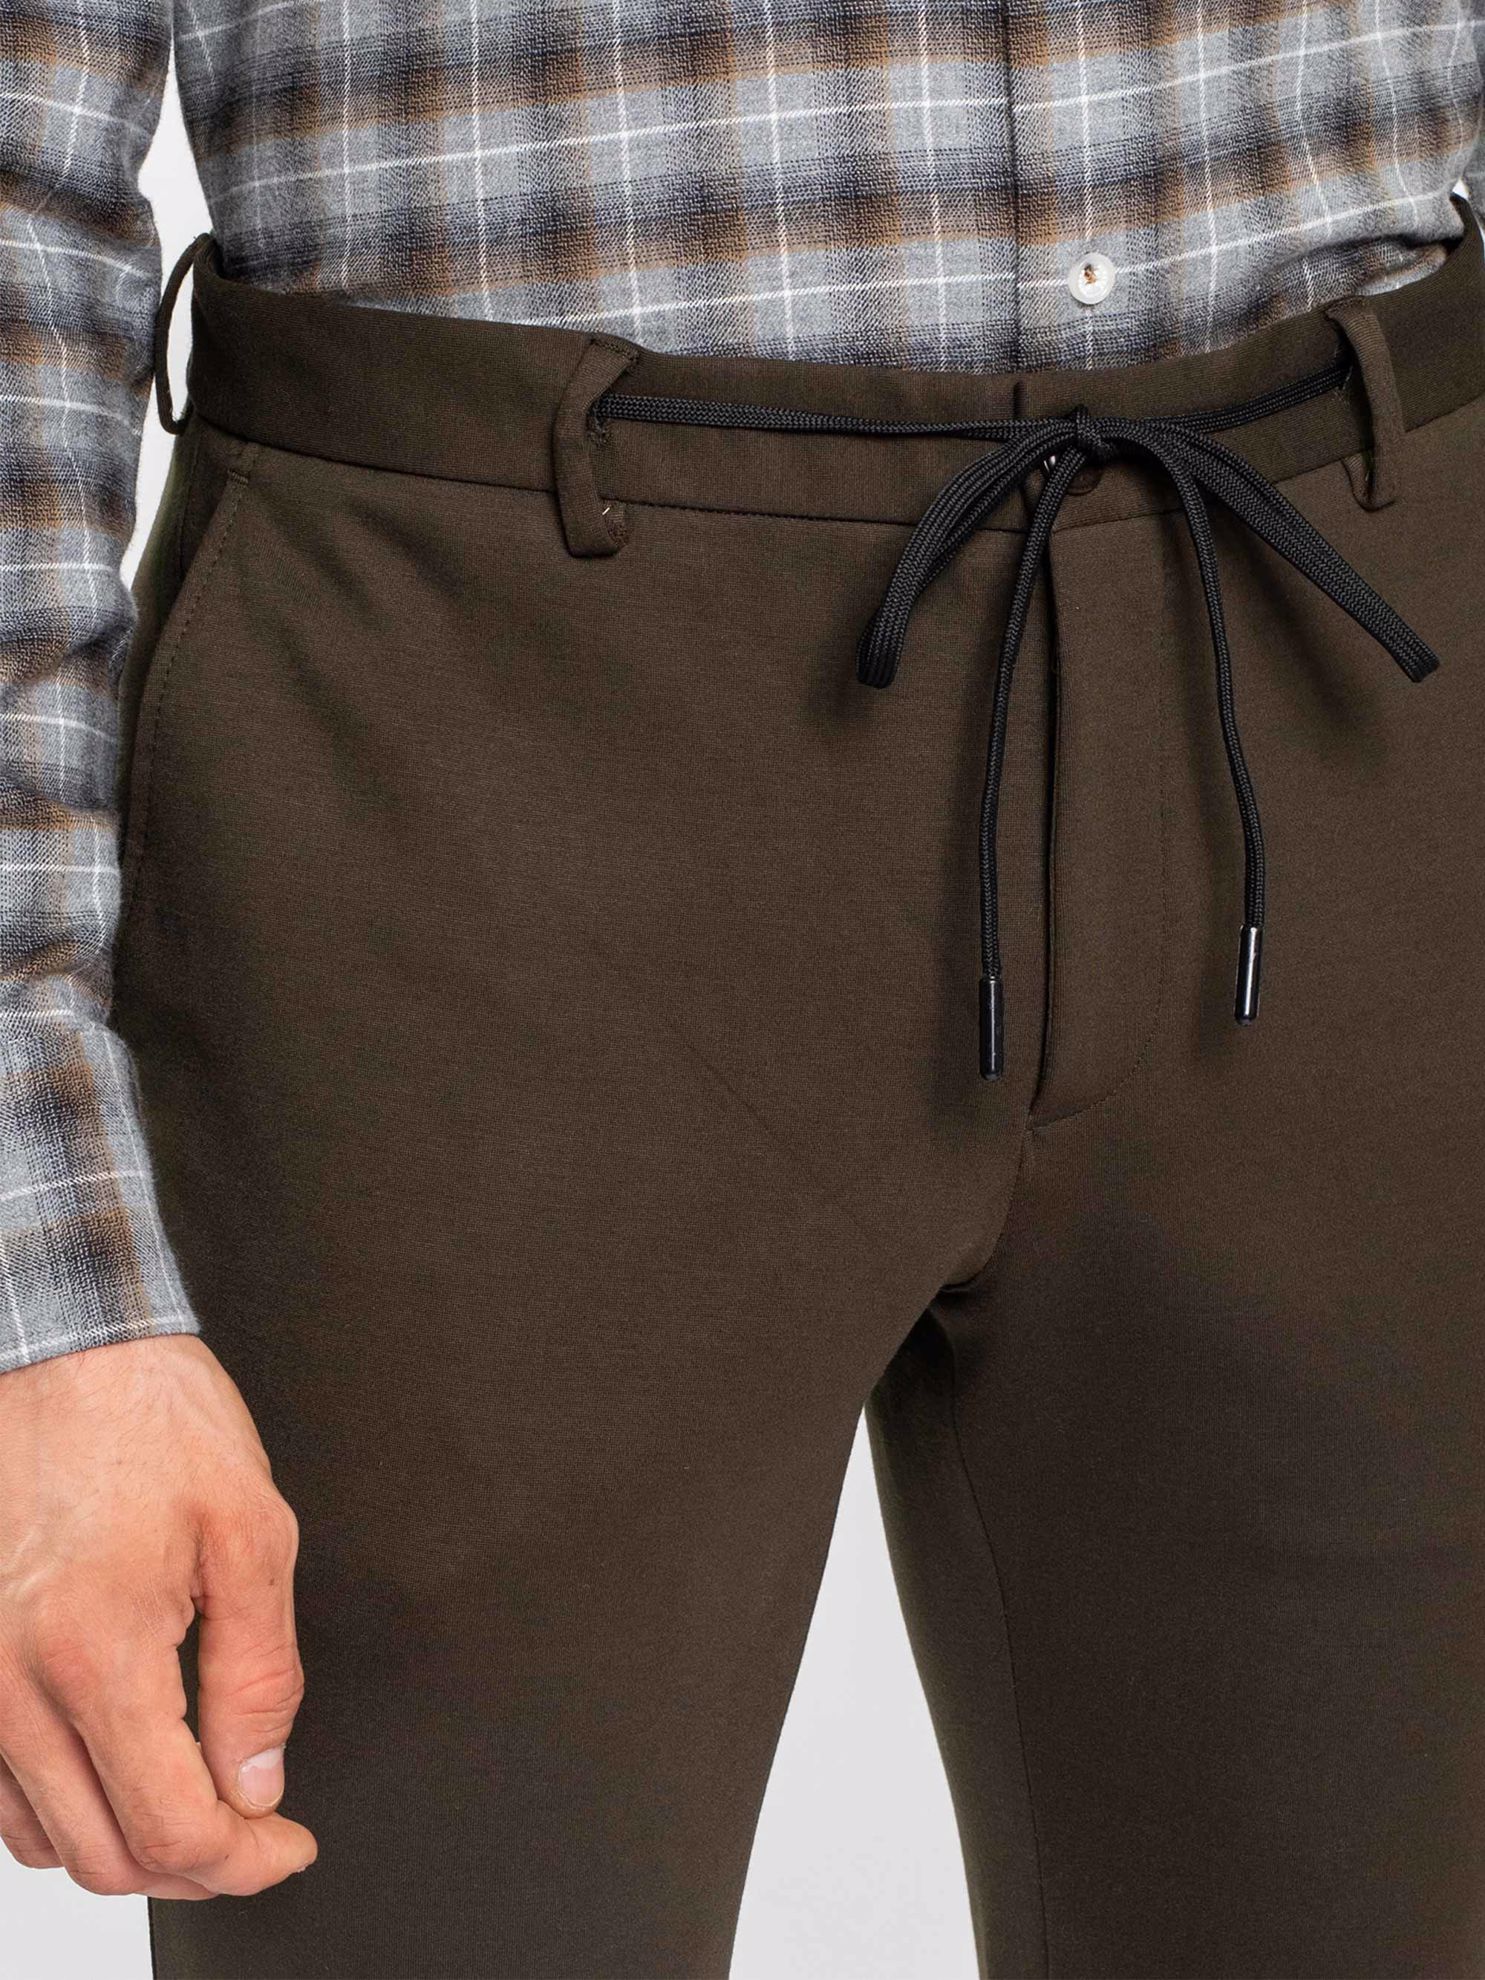 Karaca Erkek 6 Drop Pantolon-Haki. ürün görseli